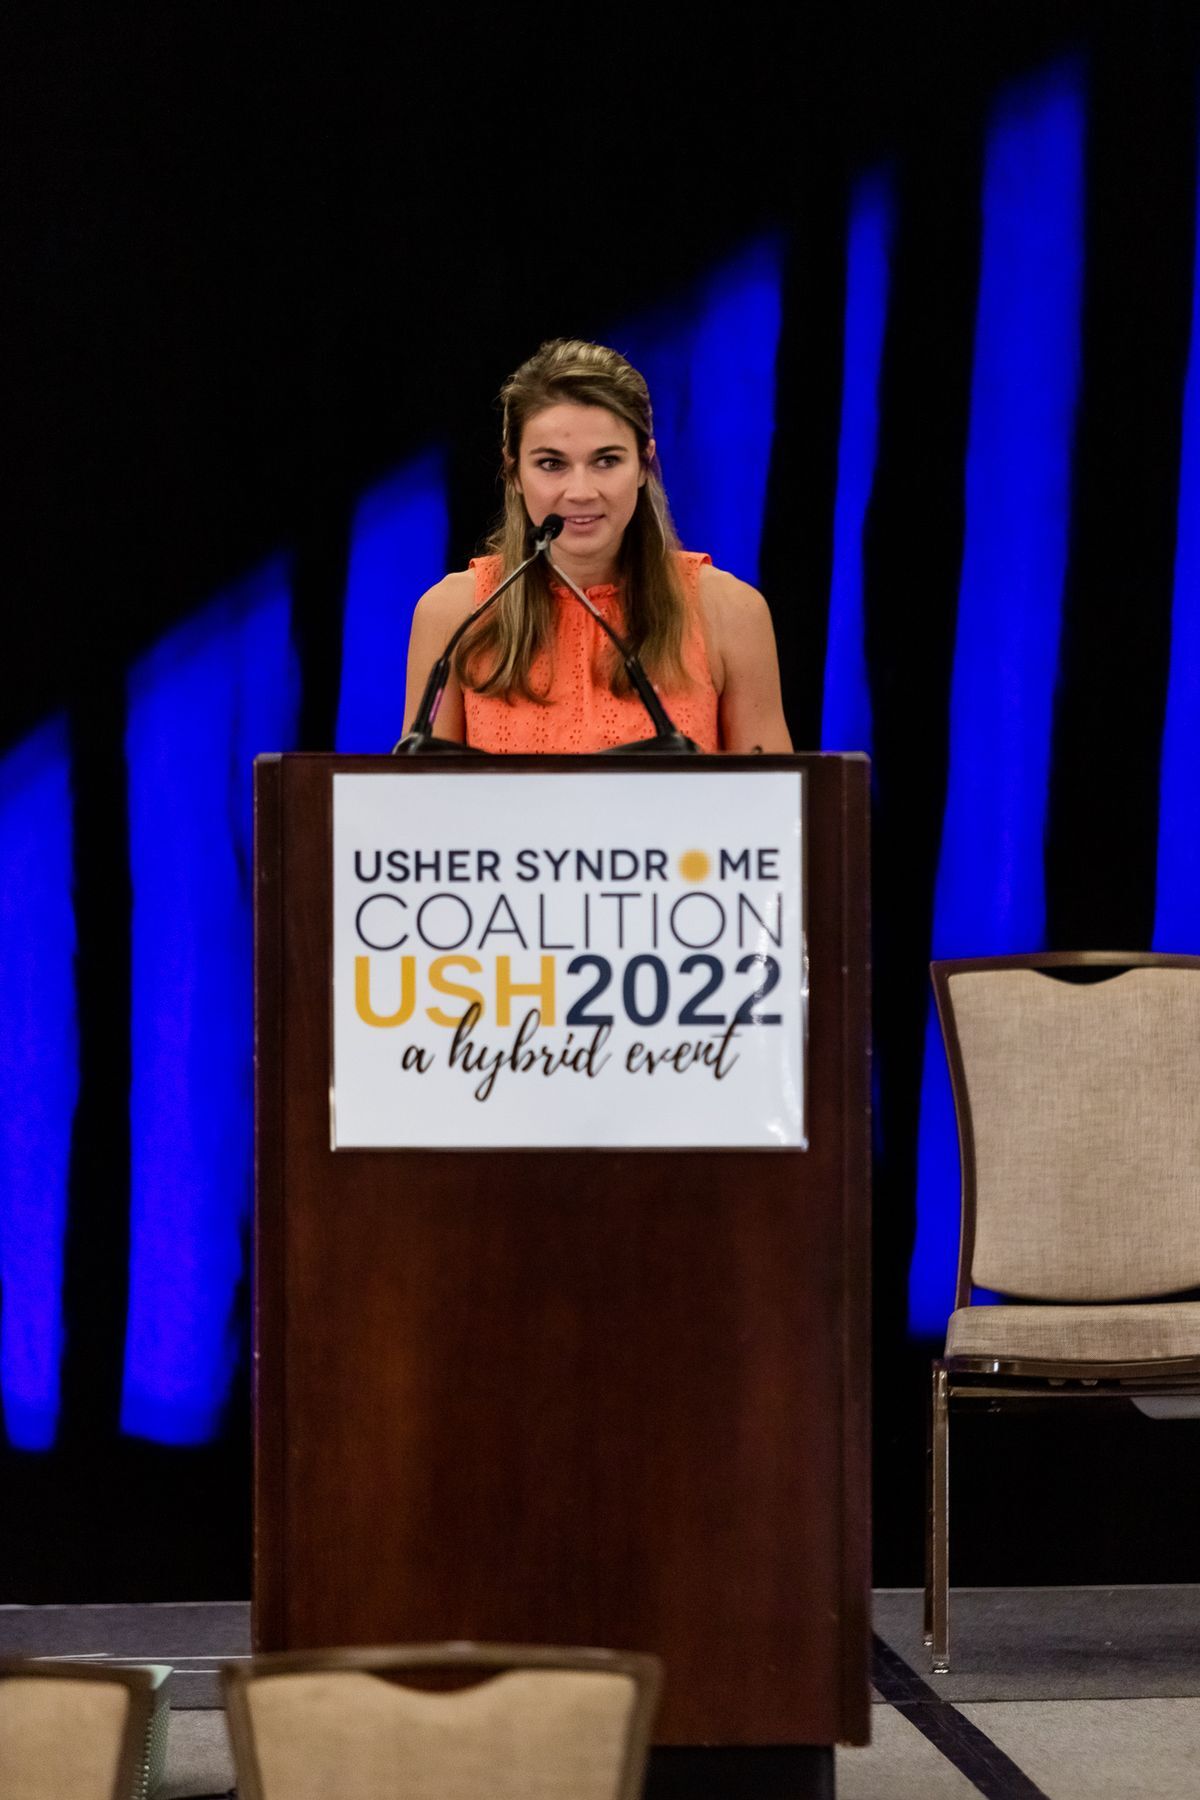 Becca Meyers standing at the podium wearing an orange shirt, talking.